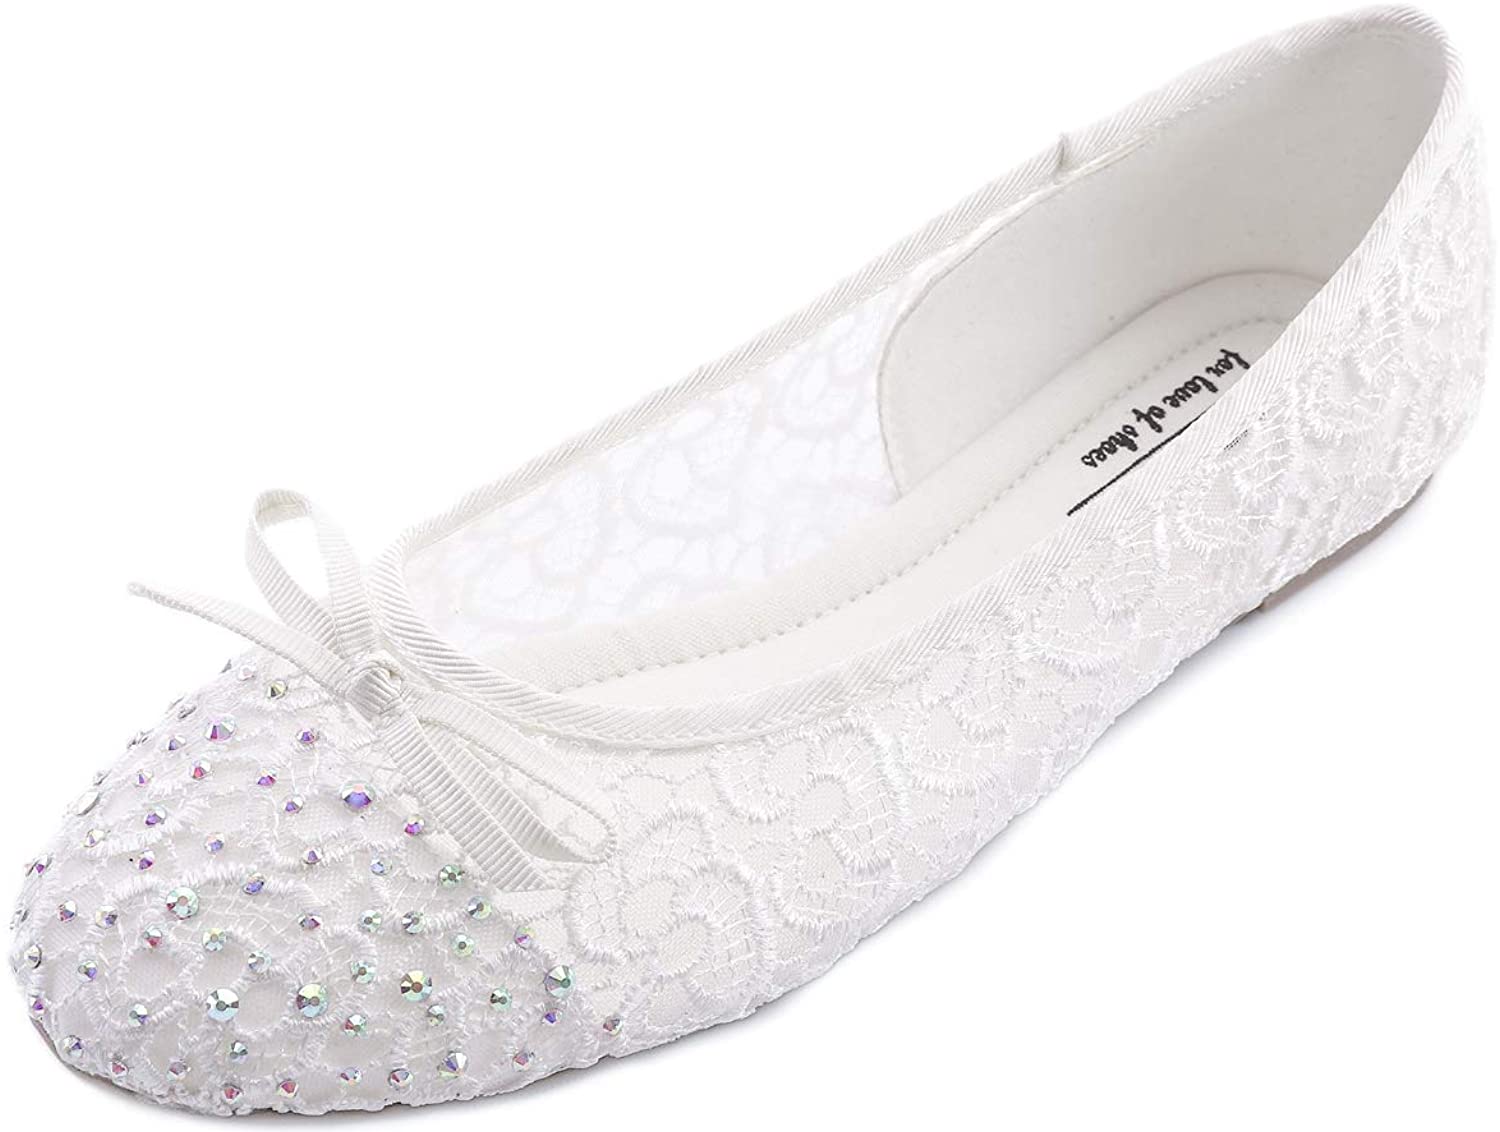 Chaussures Plates en Maille Respirante à la Mode pour Femme Feversole Women's Woven Fashion Breathable Knit Flat Shoes 